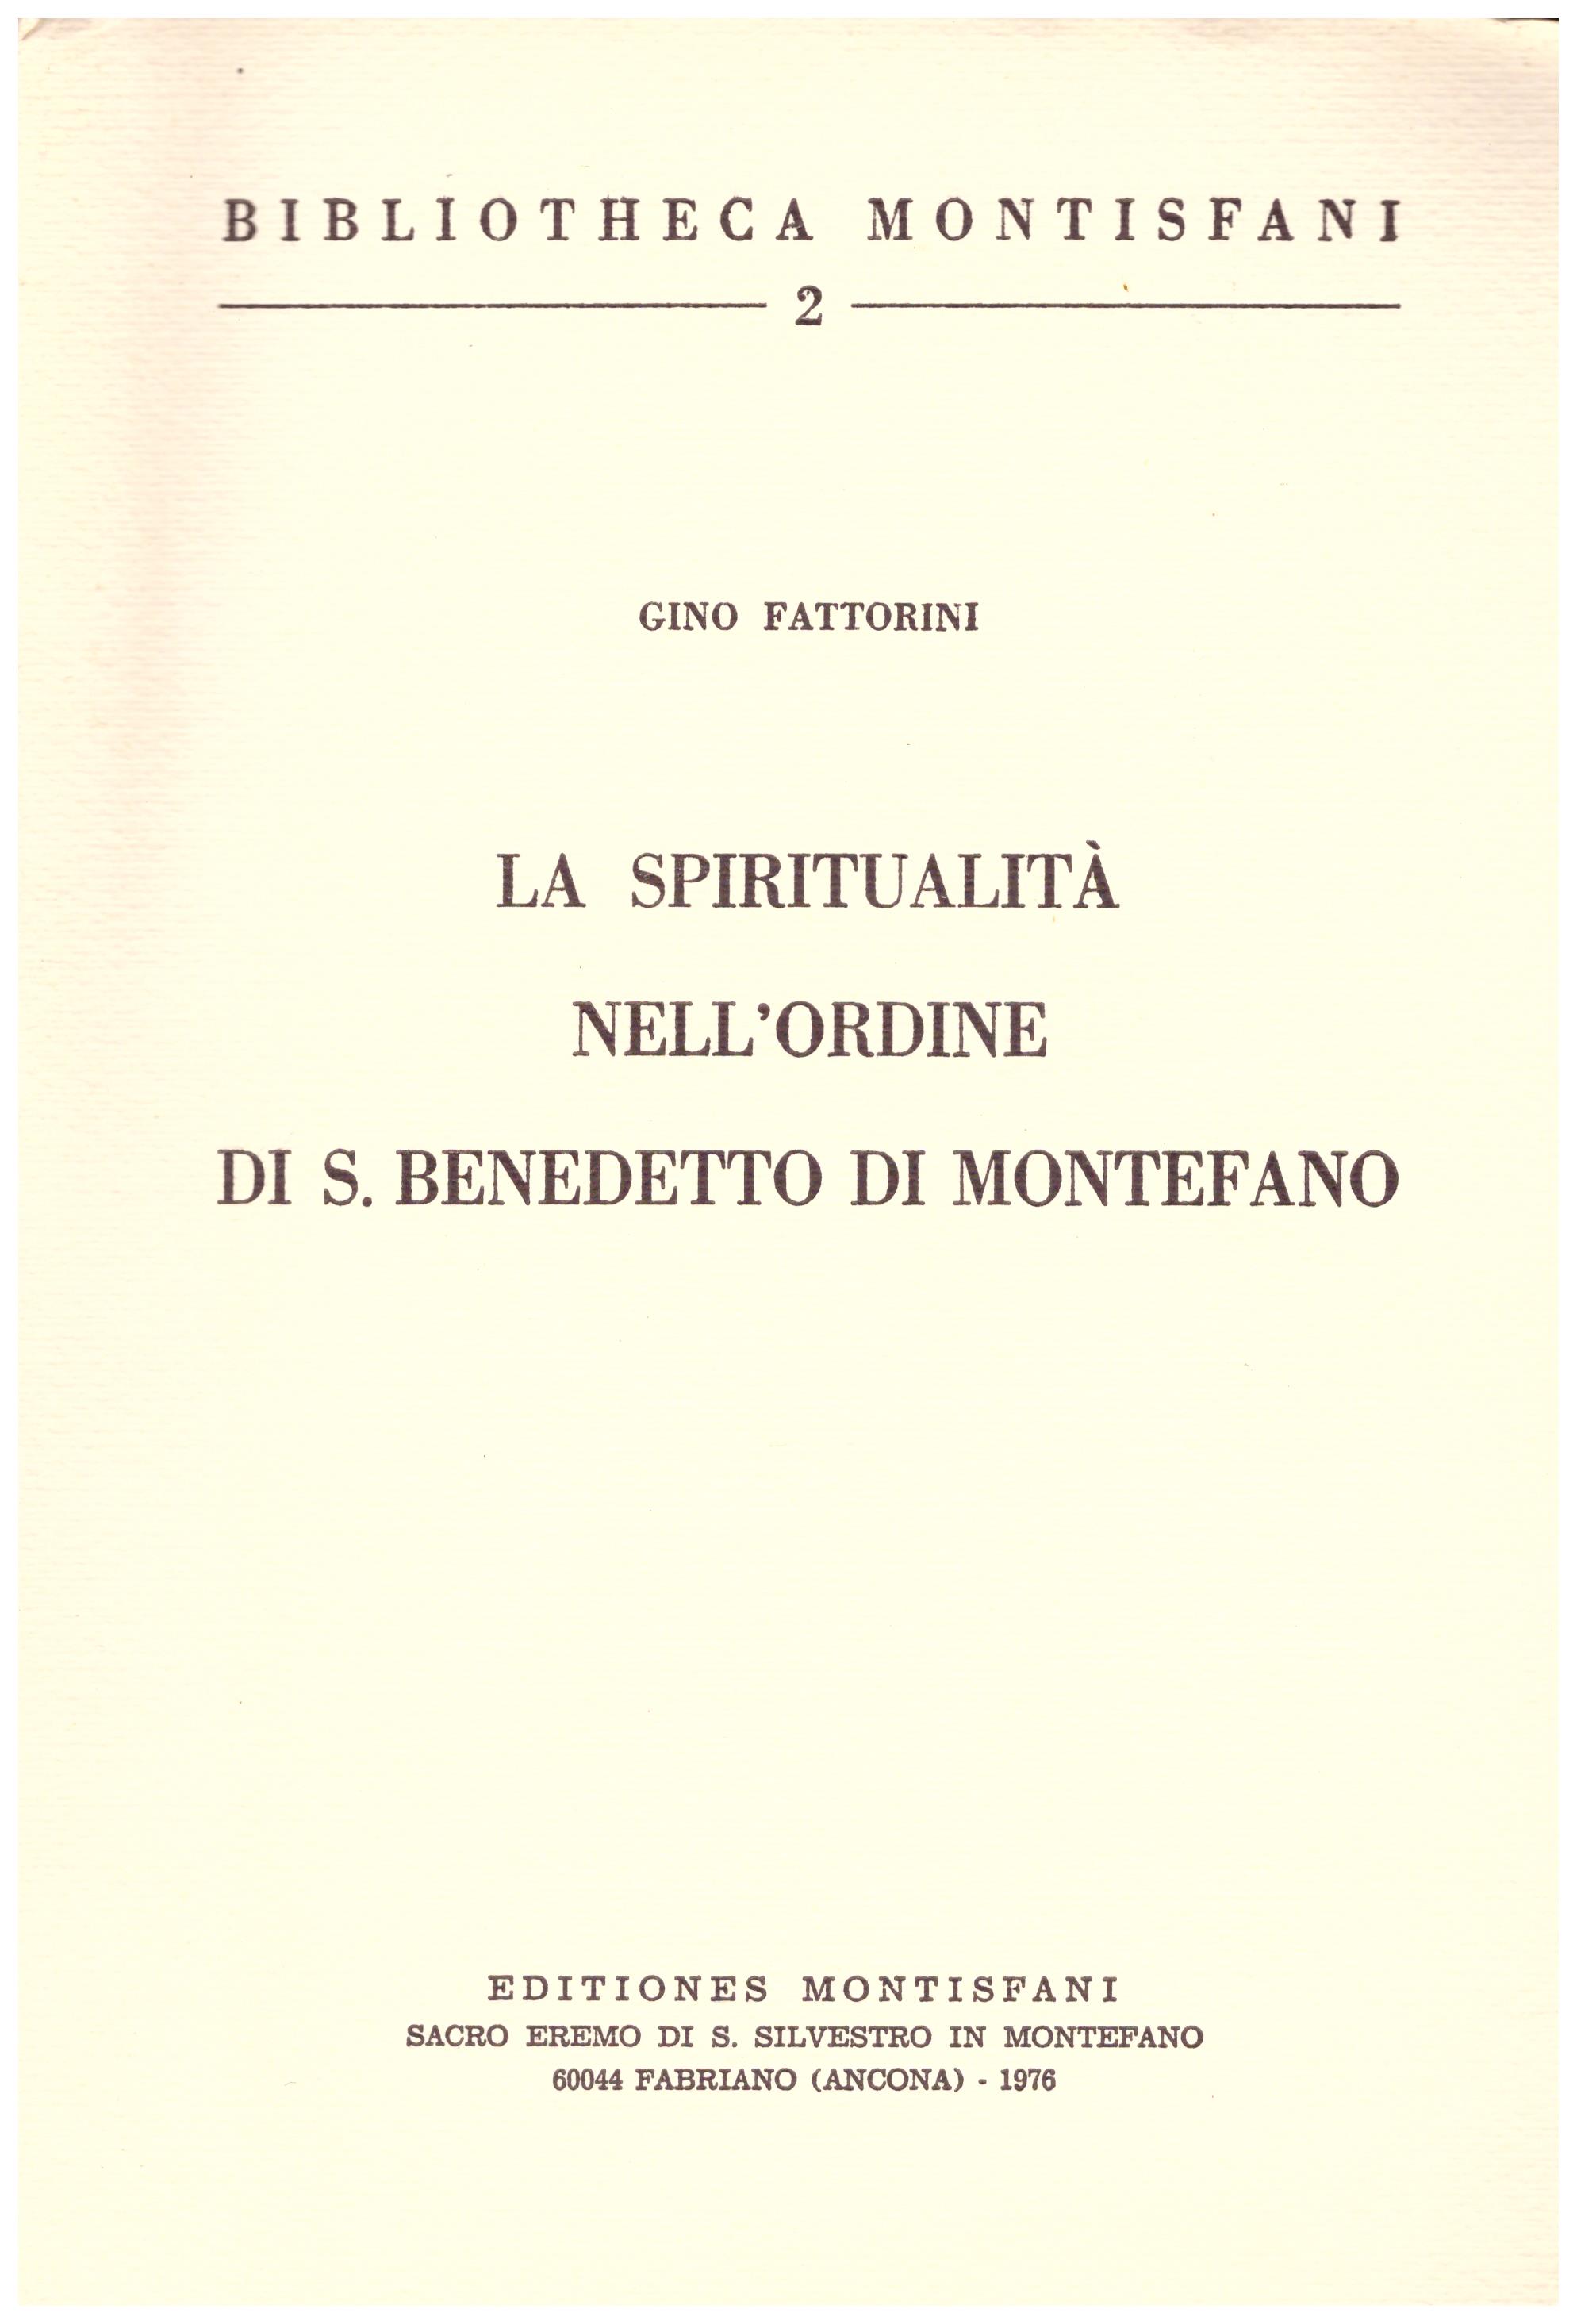 Titolo: Biblioteca montisfani 2, la spiritualità nell'ordine di S. Benedetto di Montefano Autore: Gino Fattorini   Editore: montisfani 1976